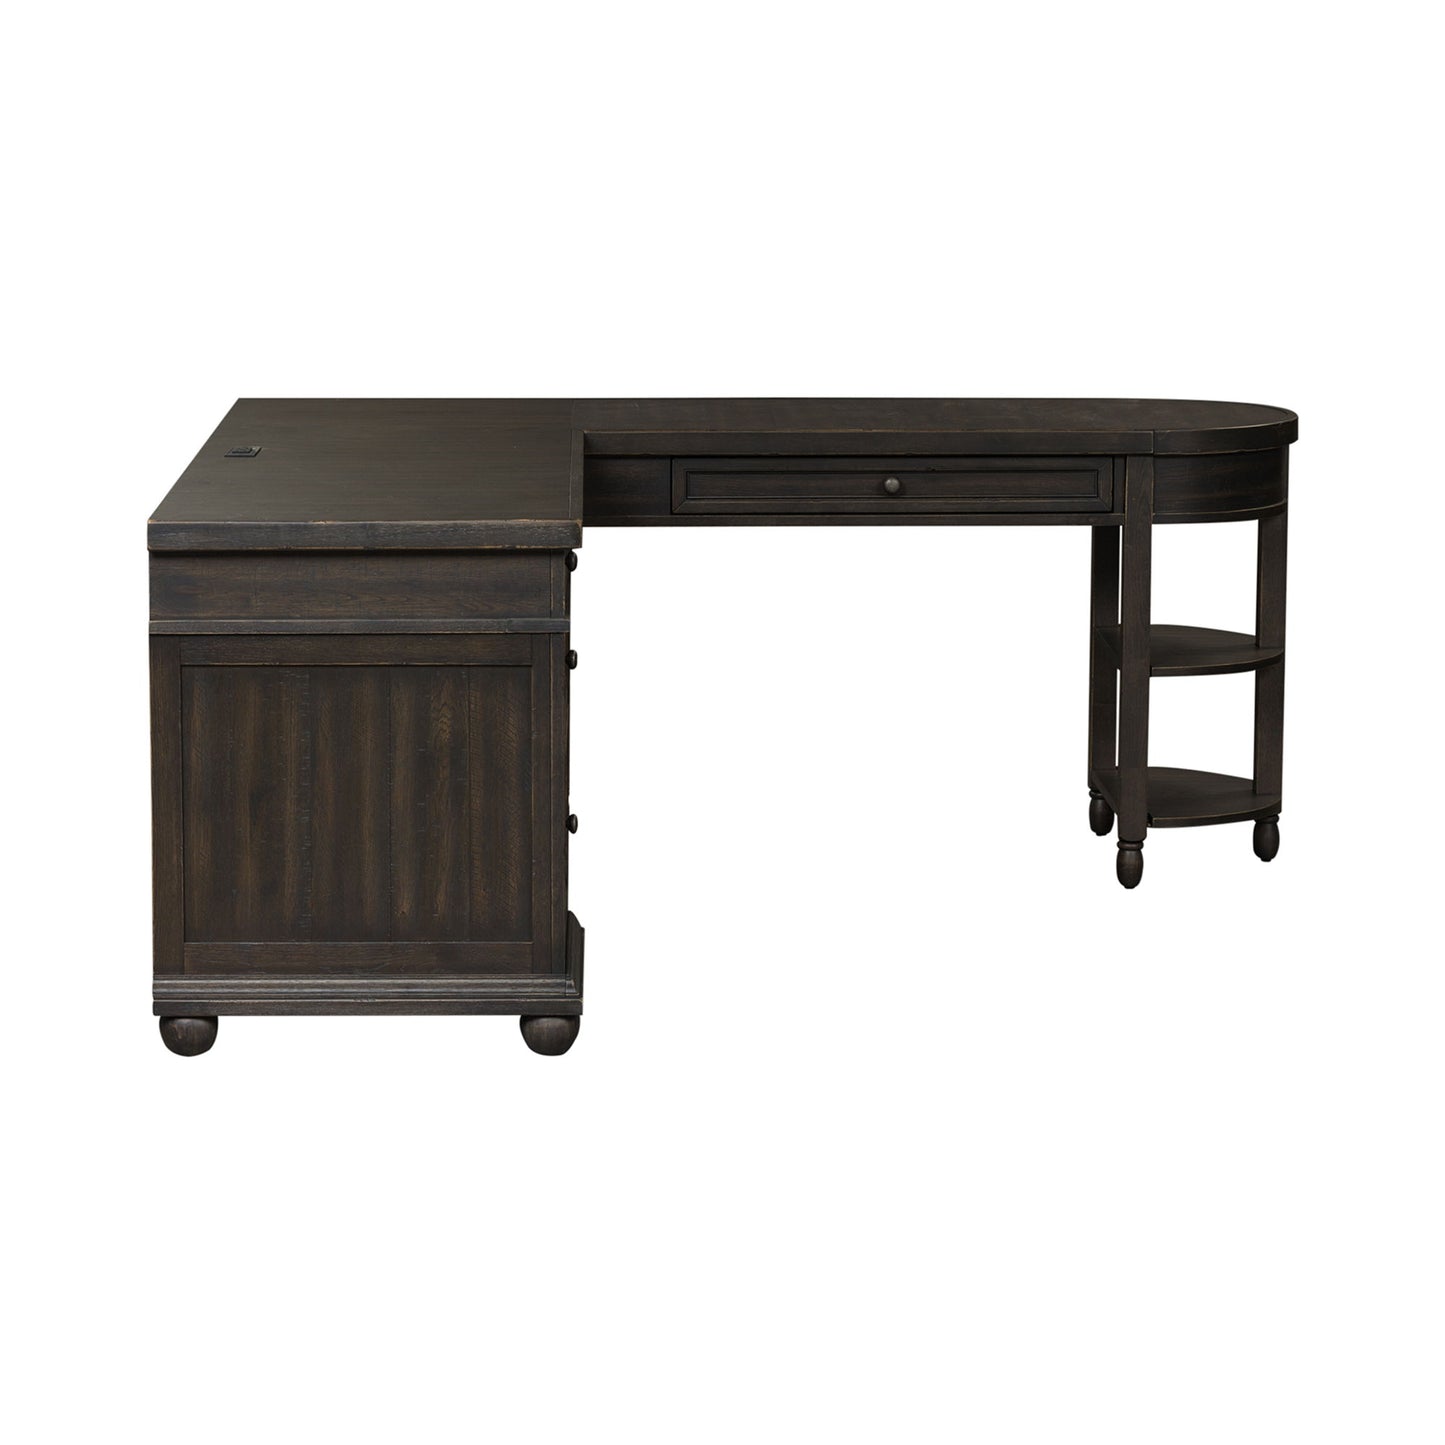 Harvest Home - L Shaped Desk Set - With Hutch - Black